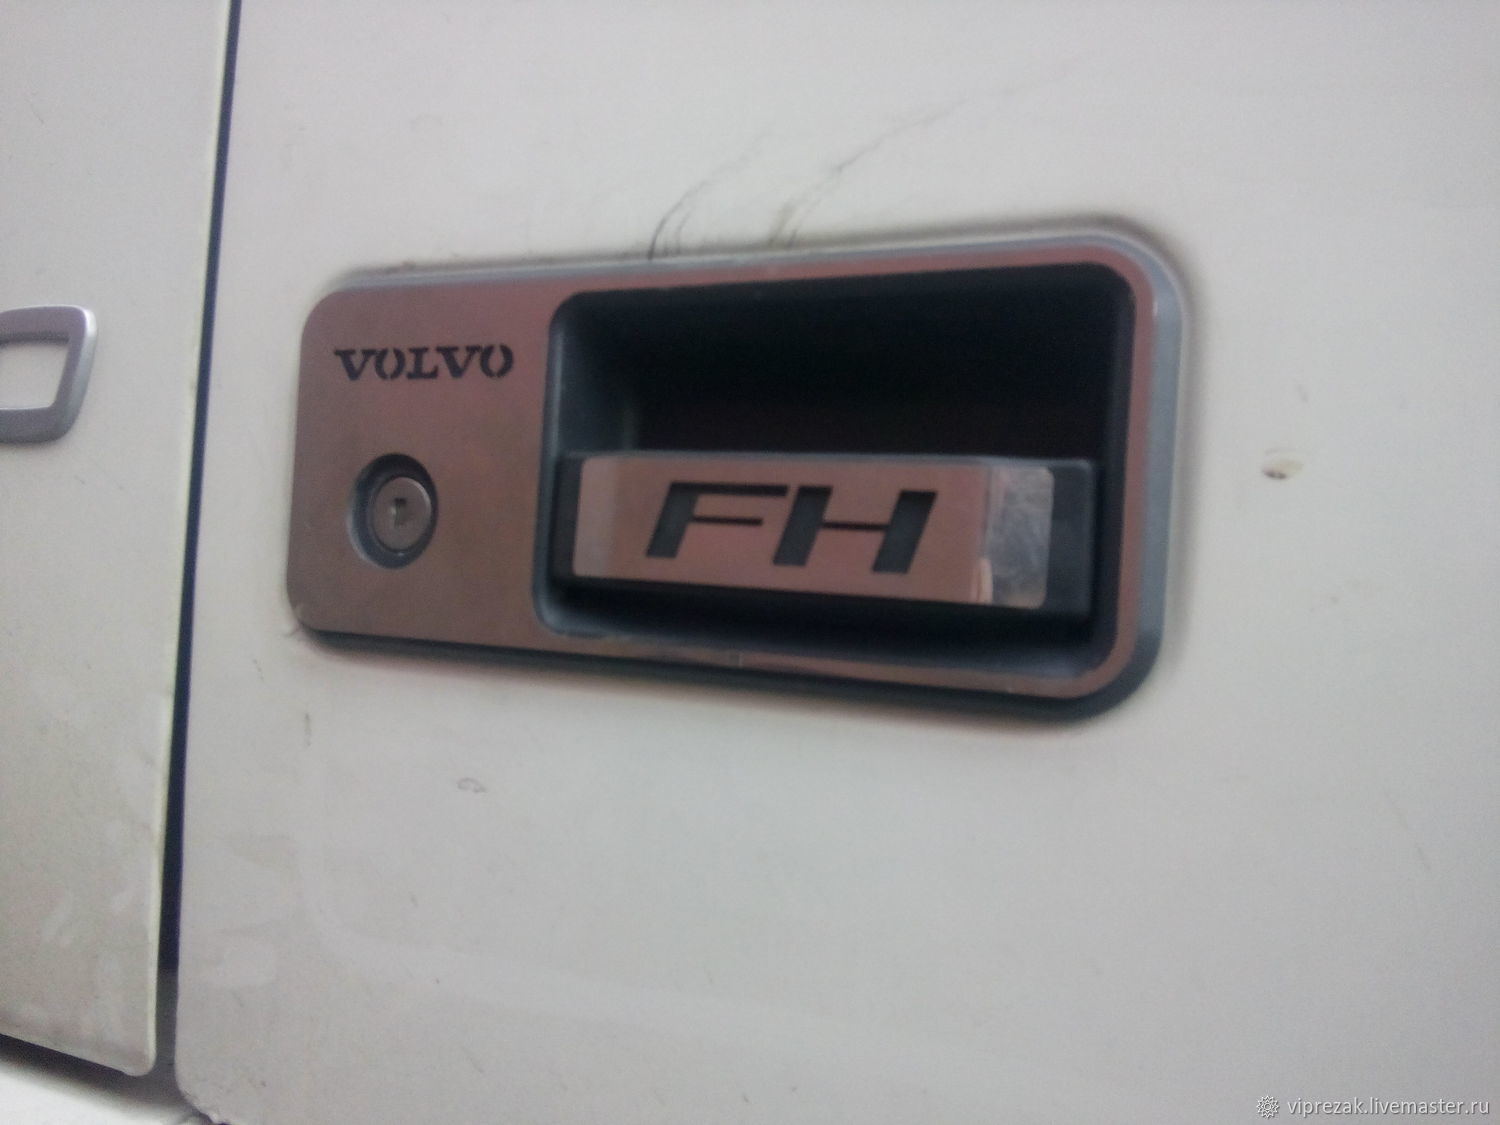 Дверь volvo fh. Накладка на ручку двери Volvo FH. Накладки на дверные ручки Volvo FH 4. Ручка открывания двери Вольво тягач. Накладка на дверь Volvo FH правая.